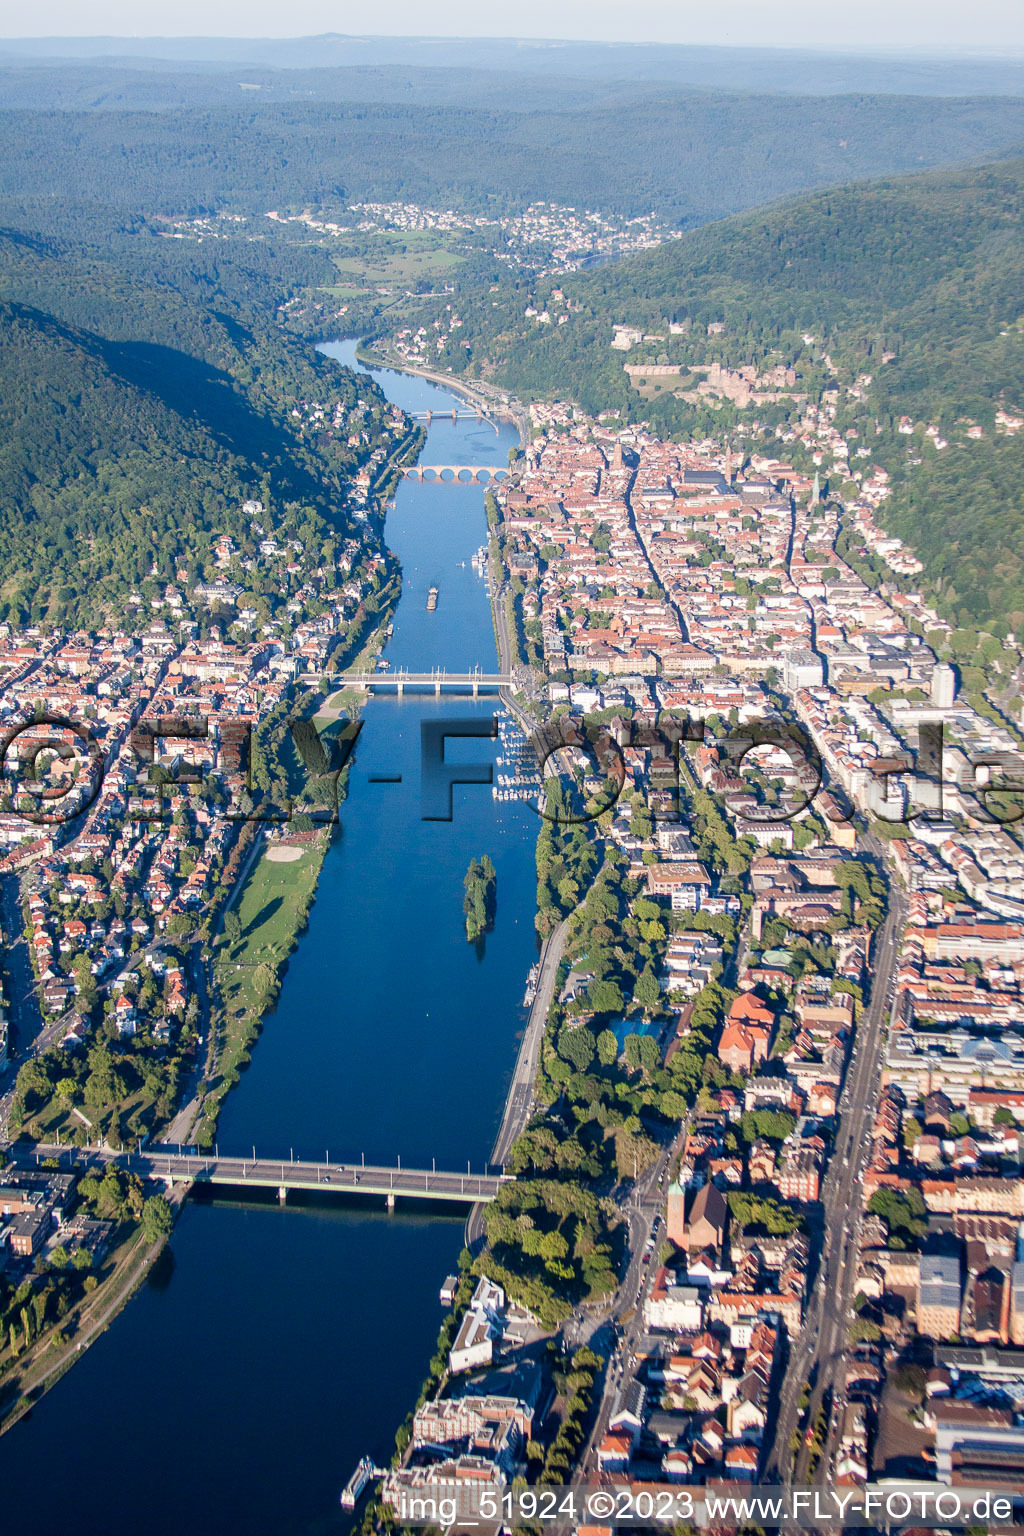 Luftbild von Ortskern am Uferbereich des Neckar im Neckartal - Flußverlaufes in Heidelberg im Ortsteil Voraltstadt im Bundesland Baden-Württemberg, Deutschland